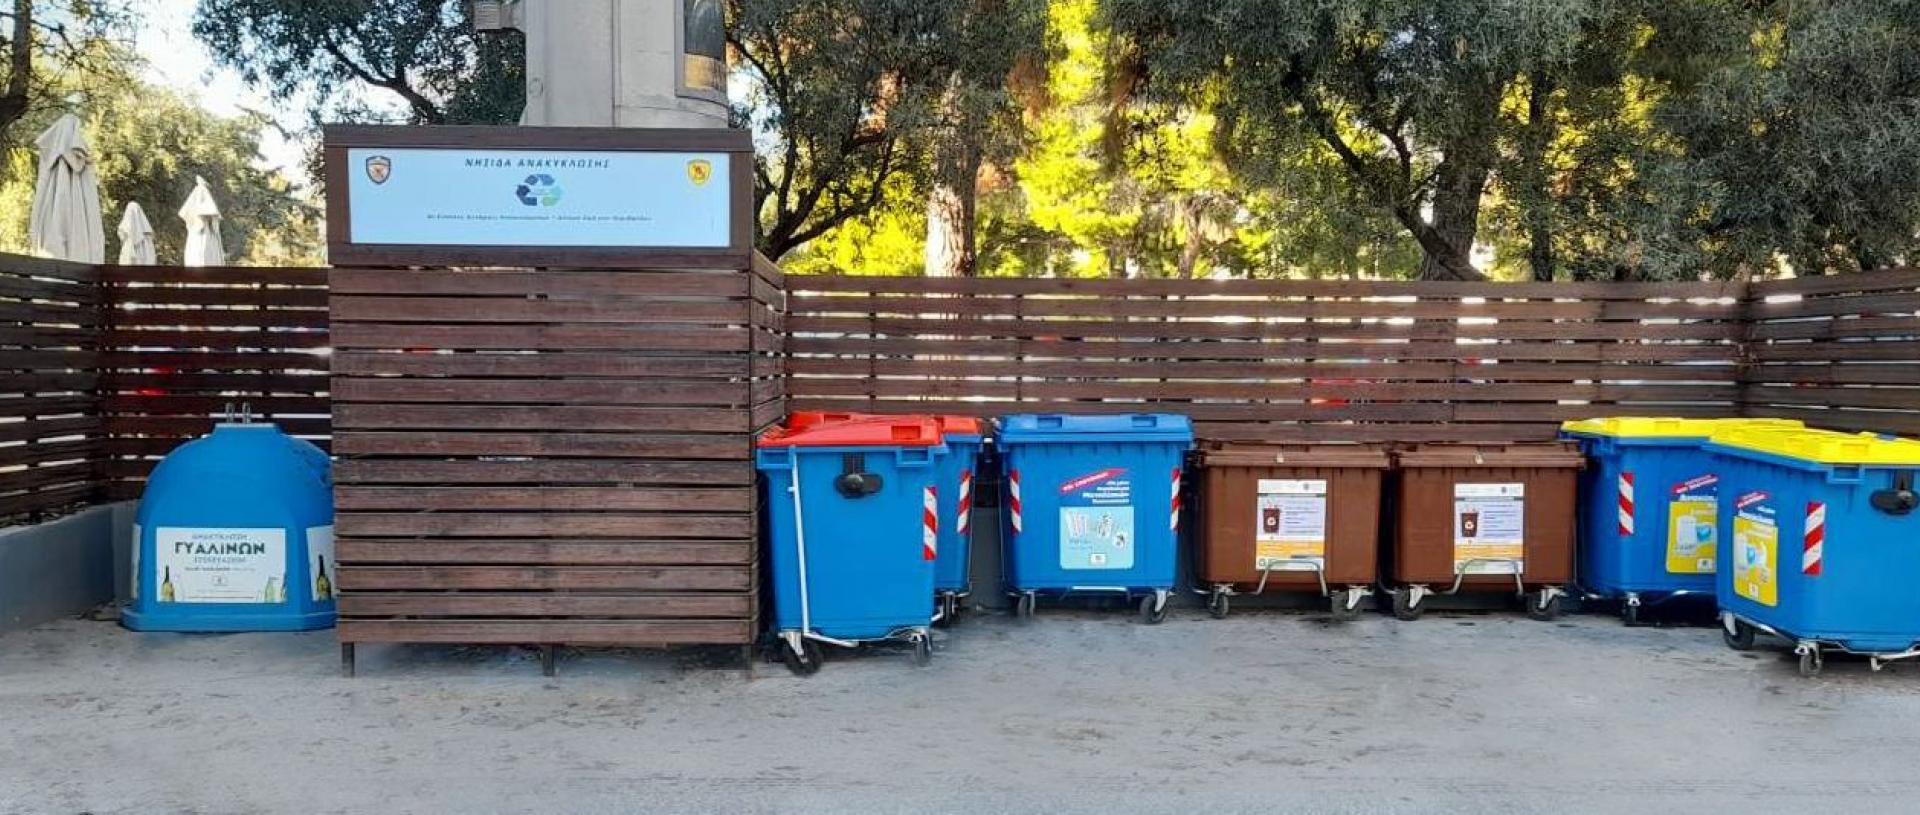 Ελληνική Εταιρεία Αξιοποίησης Ανακύκλωσης: Έργα και οφέλη του συστήματος ανακύκλωσης στην Ελλάδα